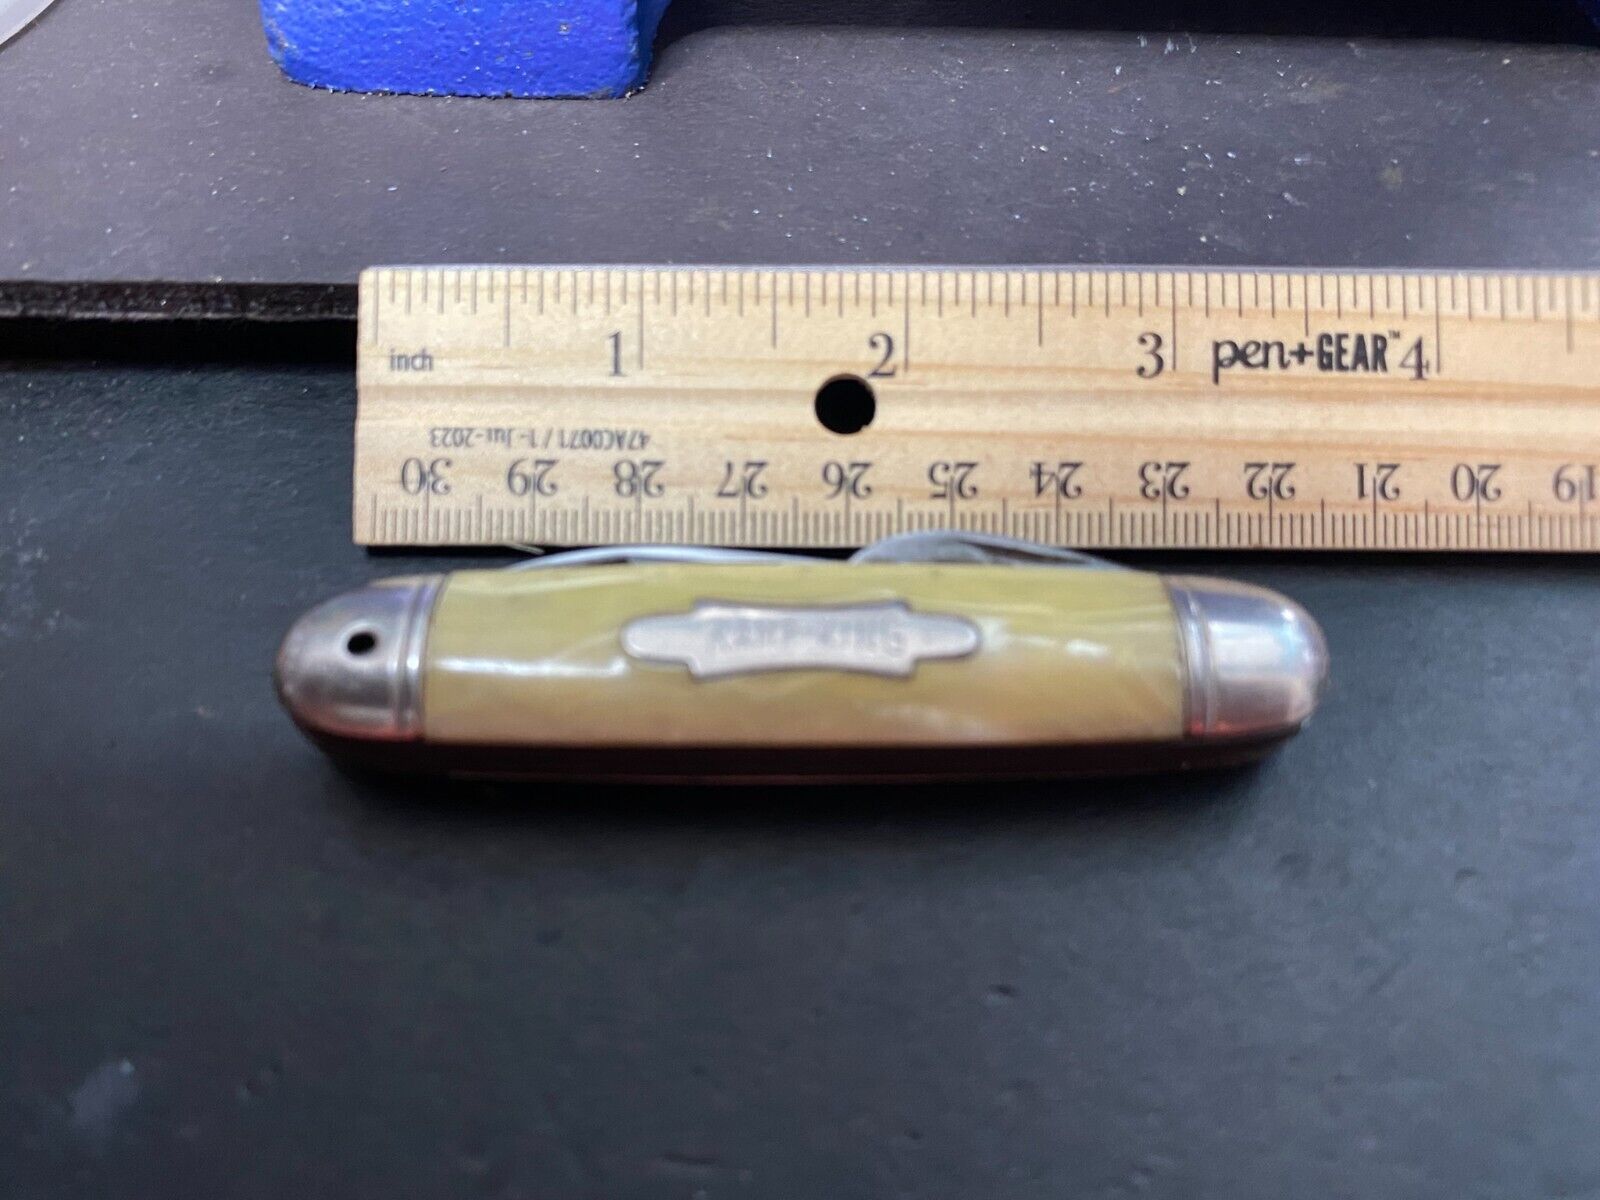 Kamp King Pocket Knife Hammer Brand Imperial Vintage Broken Can Opener